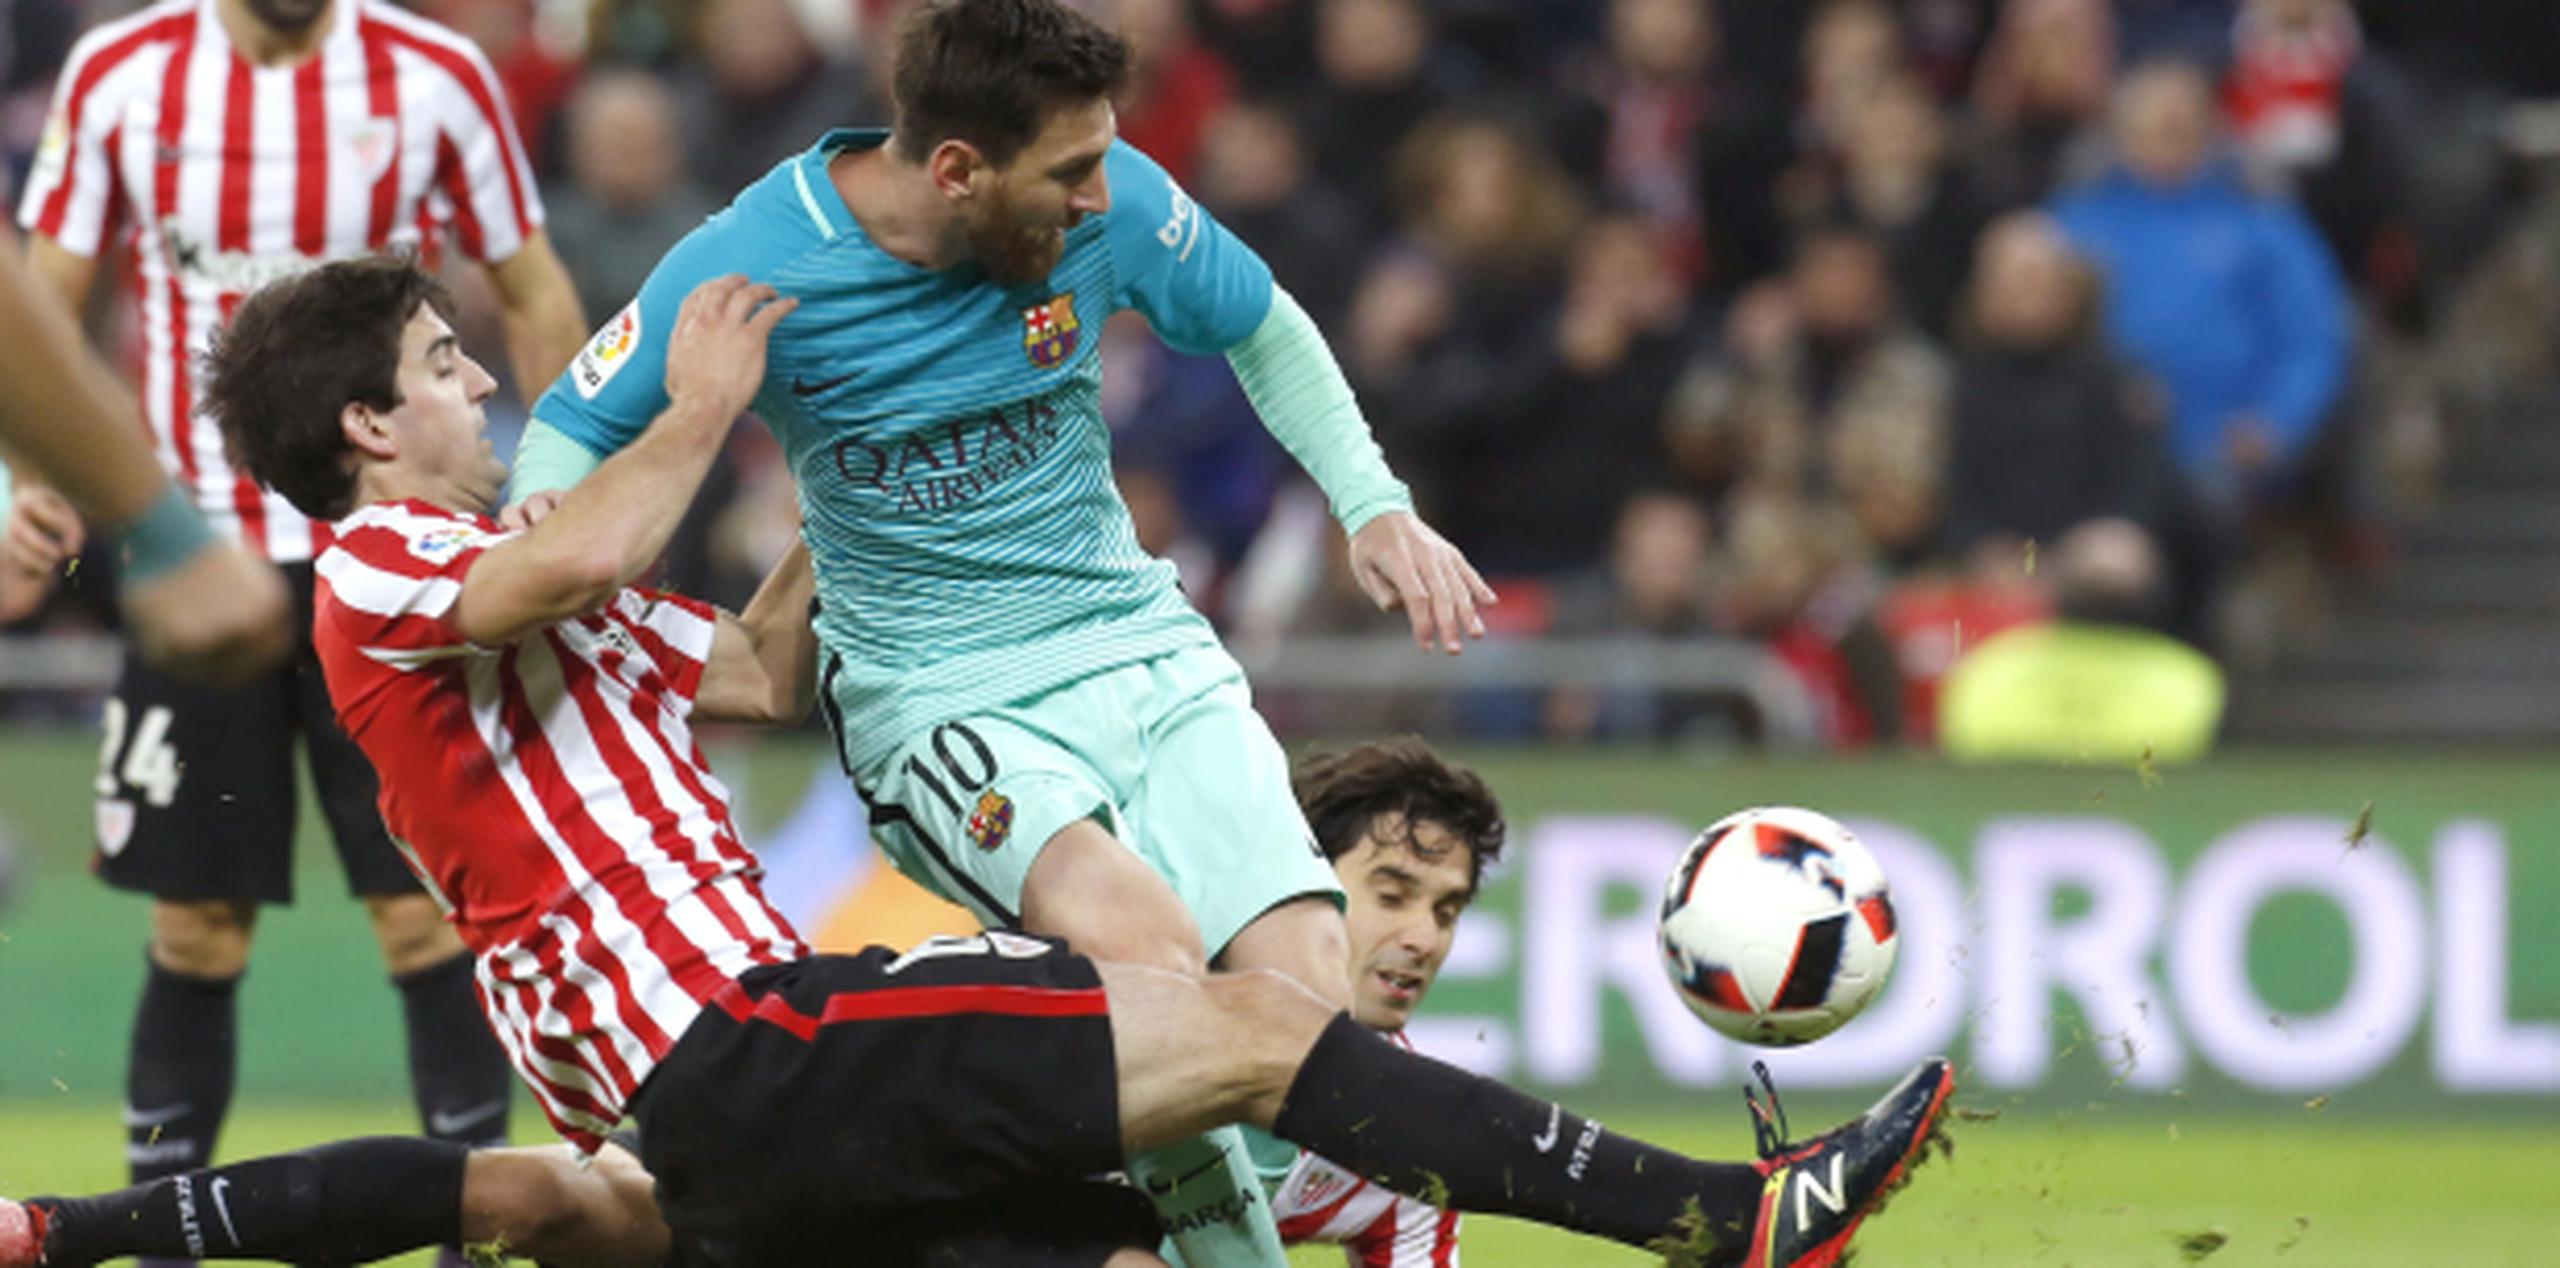 El delantero argentino del F.C Barcelona, Leo Messi, disputa un balón ante los jugadores del Athletic de Bilbao, Mikel San José y Xabier Etxeita. (Agencia EFE)